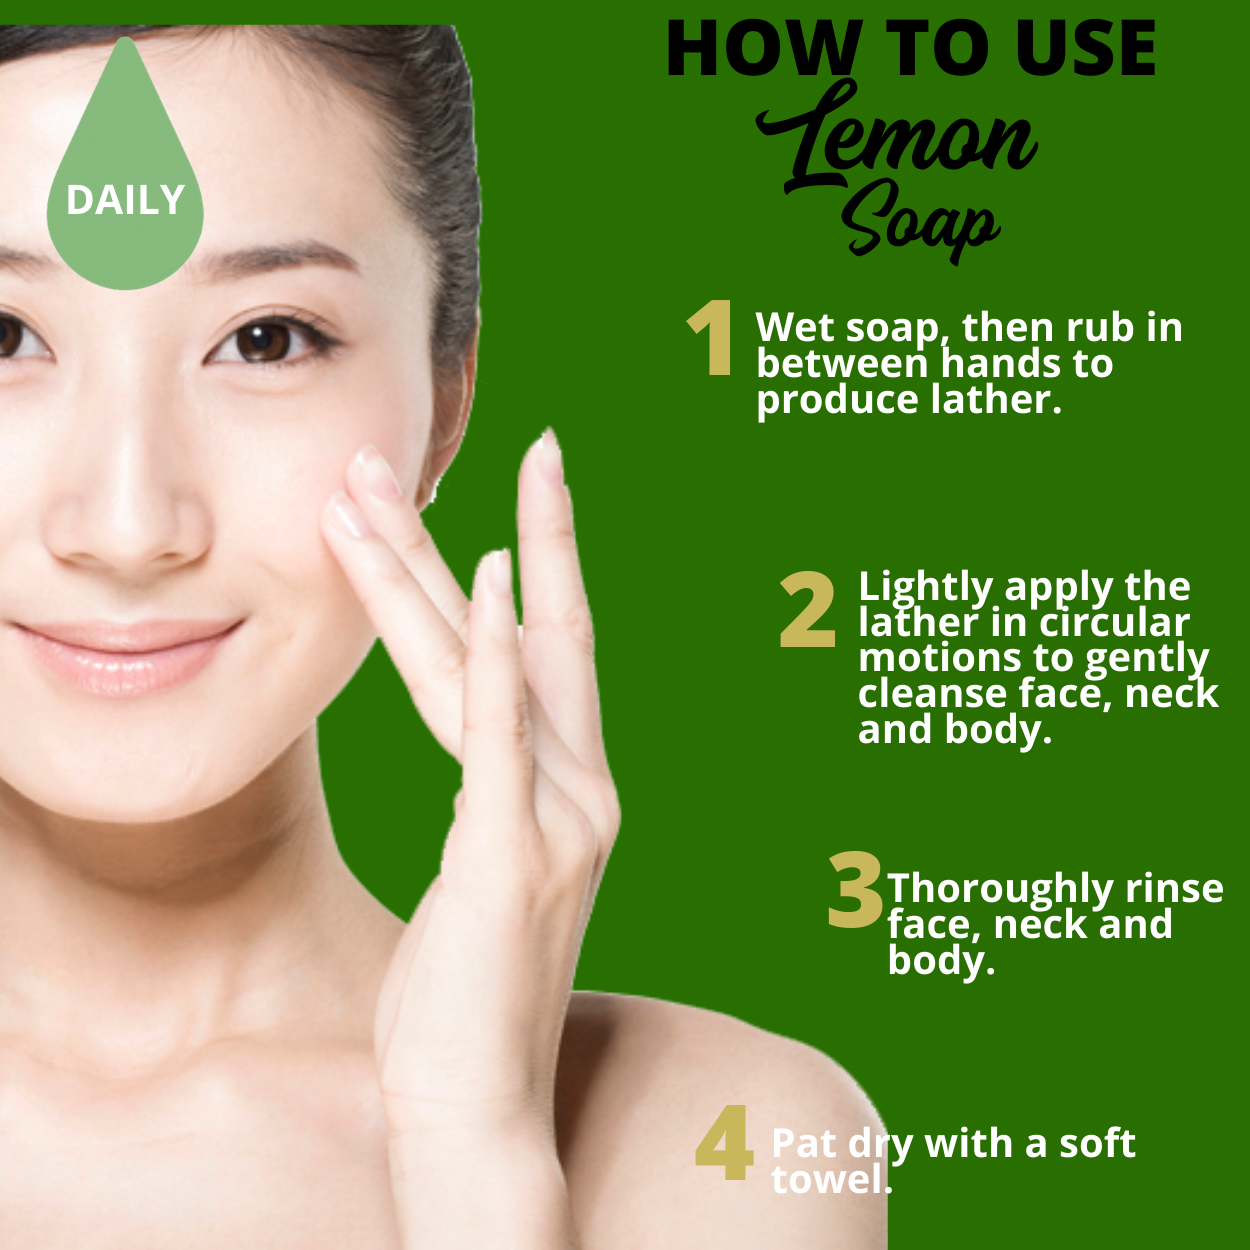 Greenika Organic Lemon Peel Natural Oil Control Anti Acne Soap